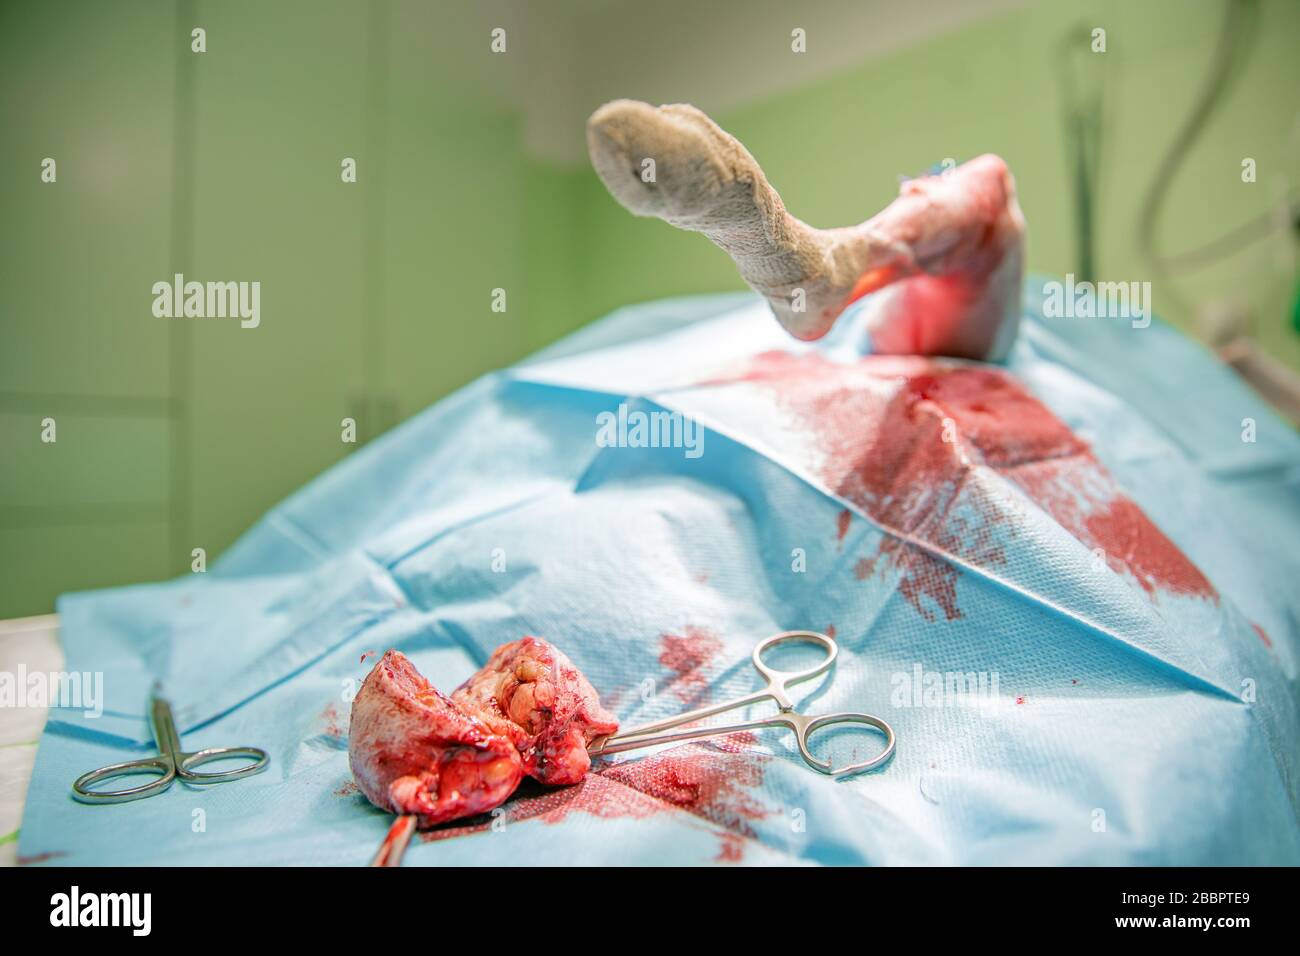 rimozione del tumore benigno sulla zampa del cane mediante intervento chirurgico Foto Stock